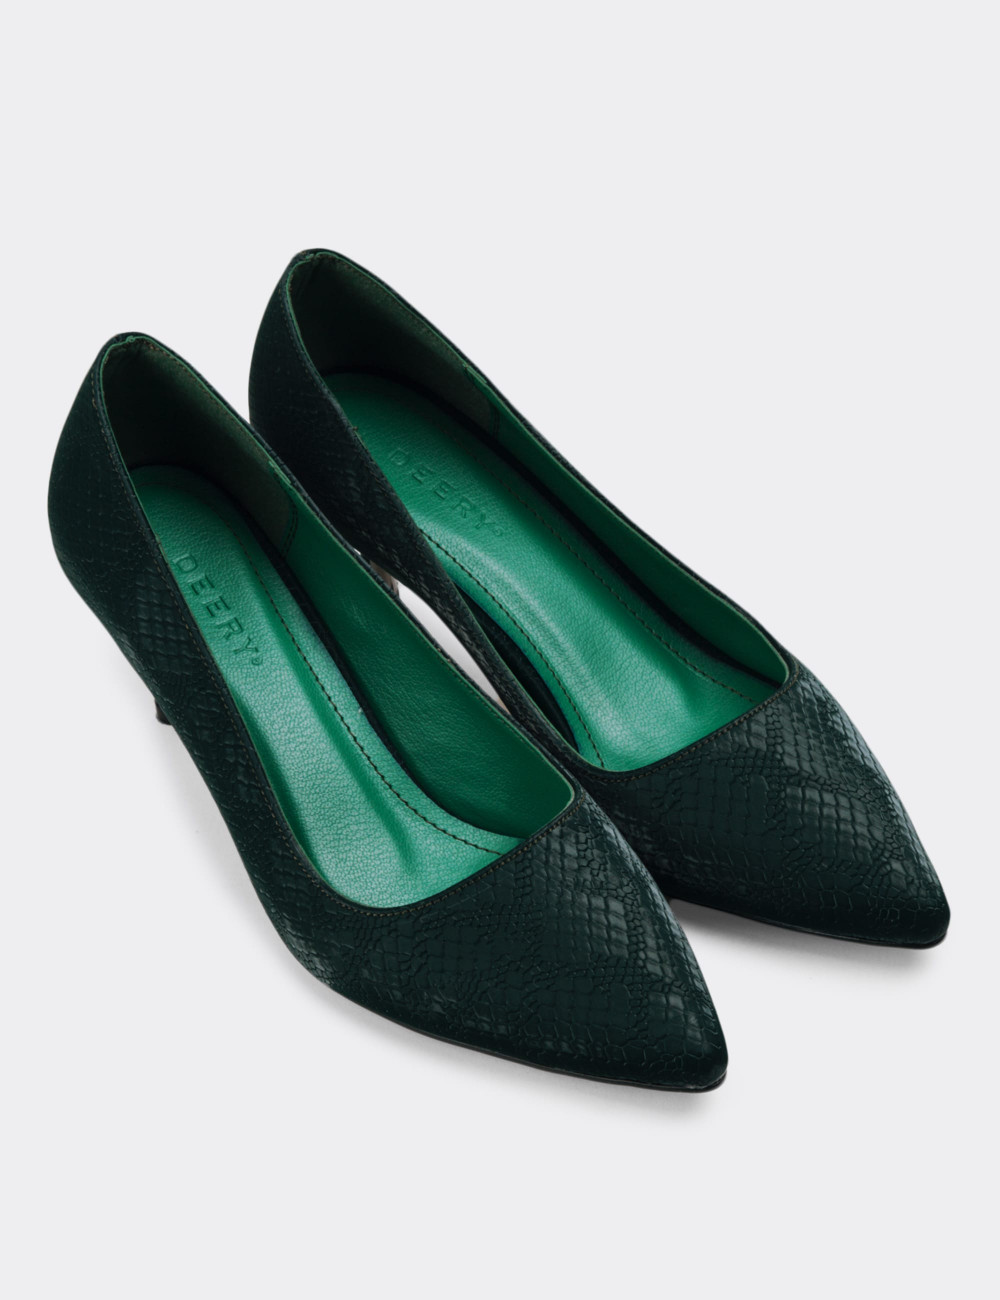 Yeşil Stiletto Kadın Topuklu Ayakkabı - K0700ZYSLM01